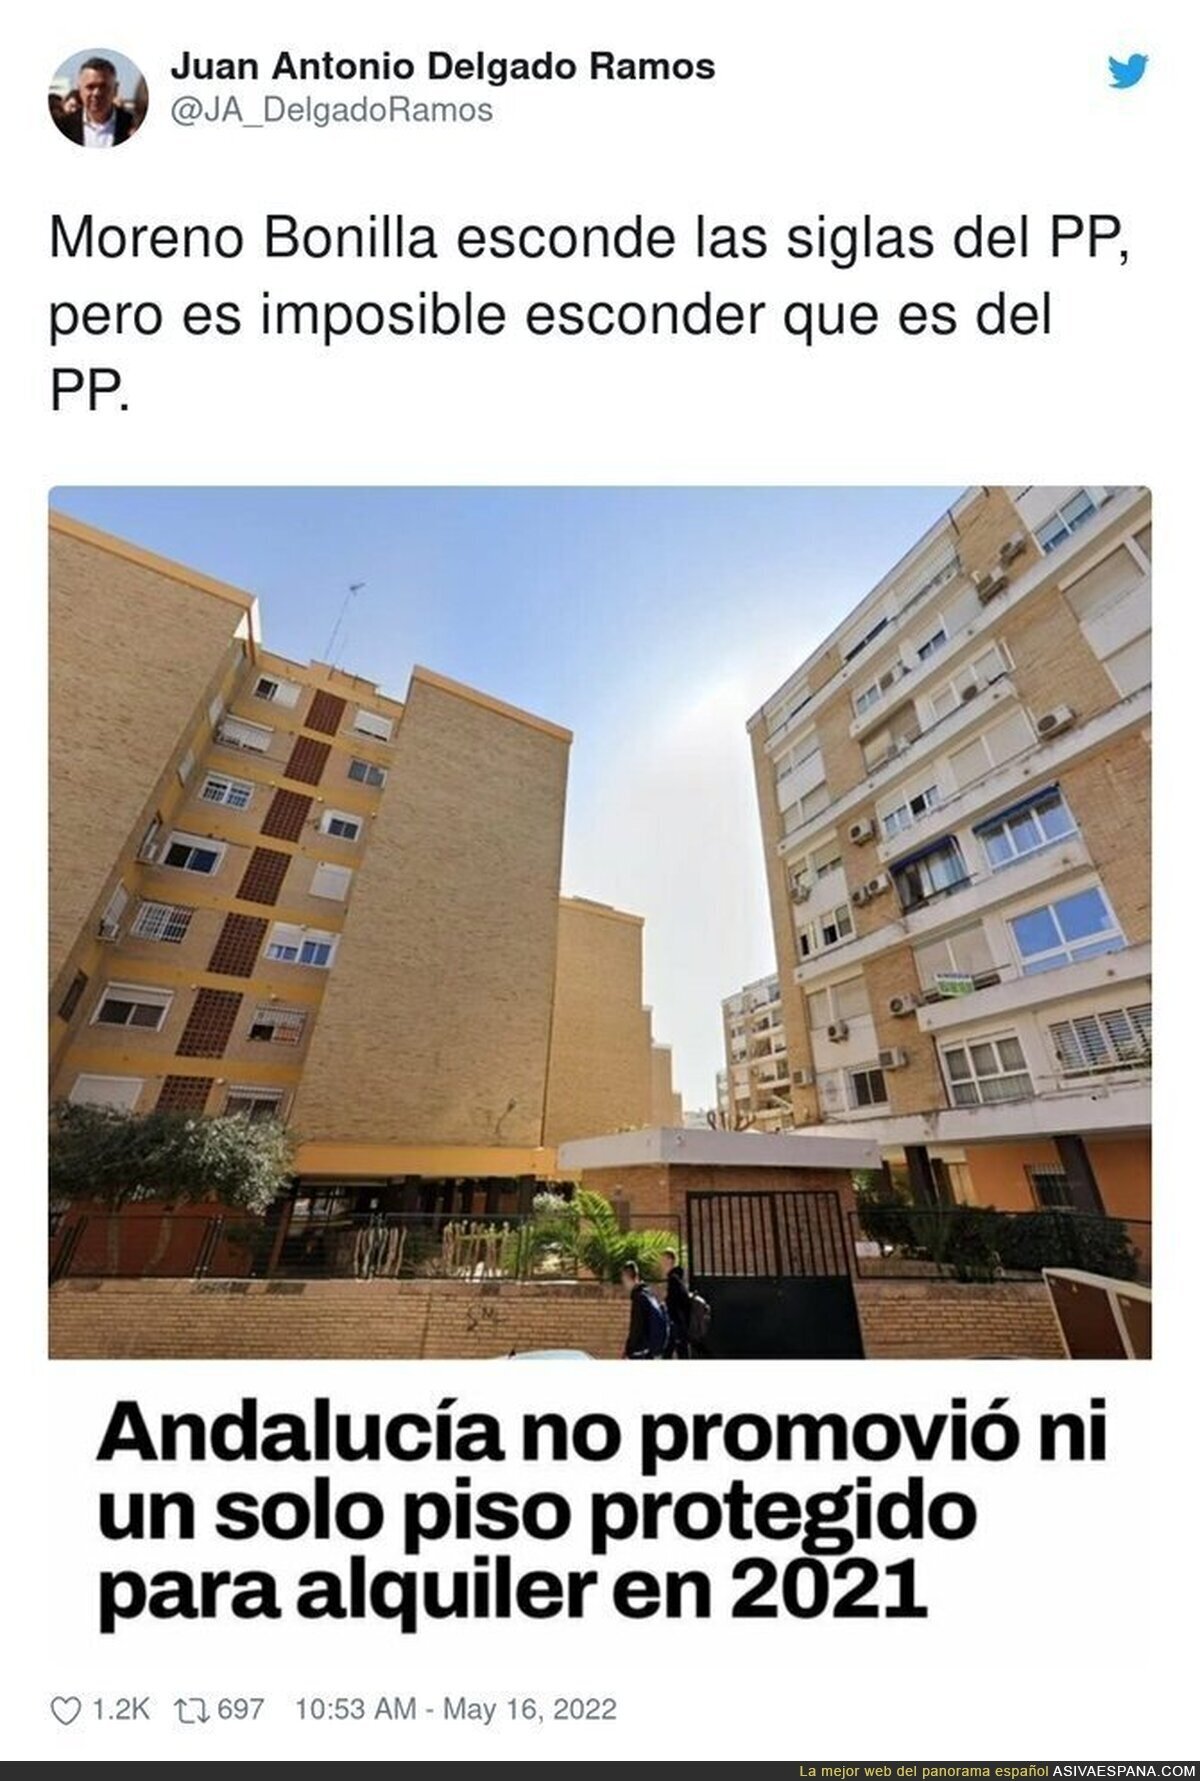 El PP haciendo cosas típicas suyas en Andalucía